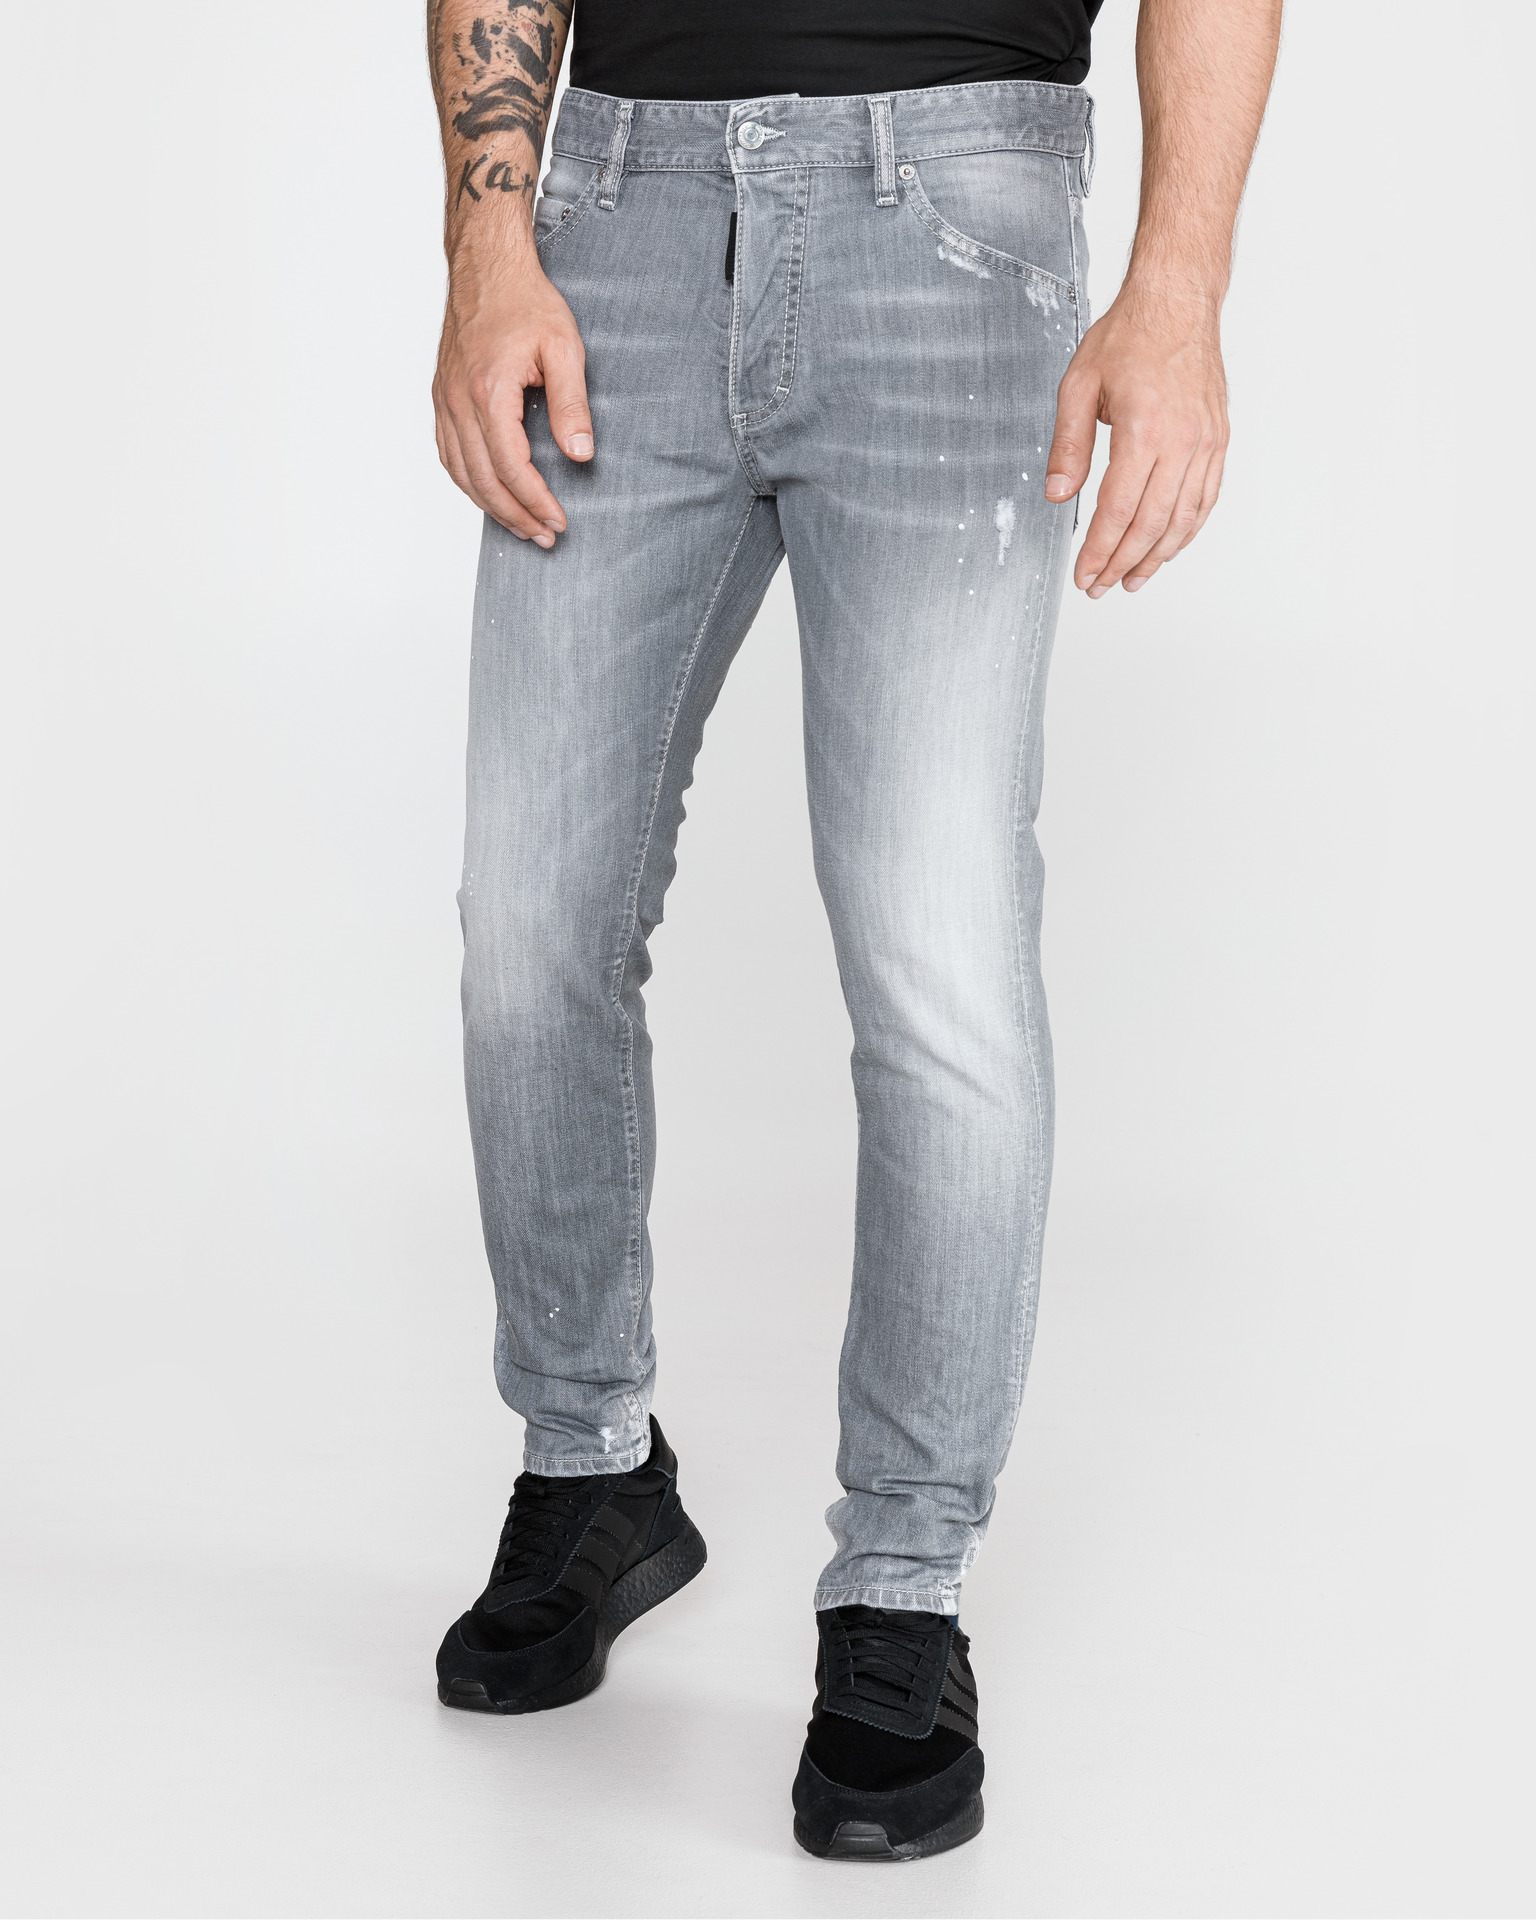 Plüschpuppe kurz Überlauf dsquared2 jeans grey Vorschau Retorte Kompromiss